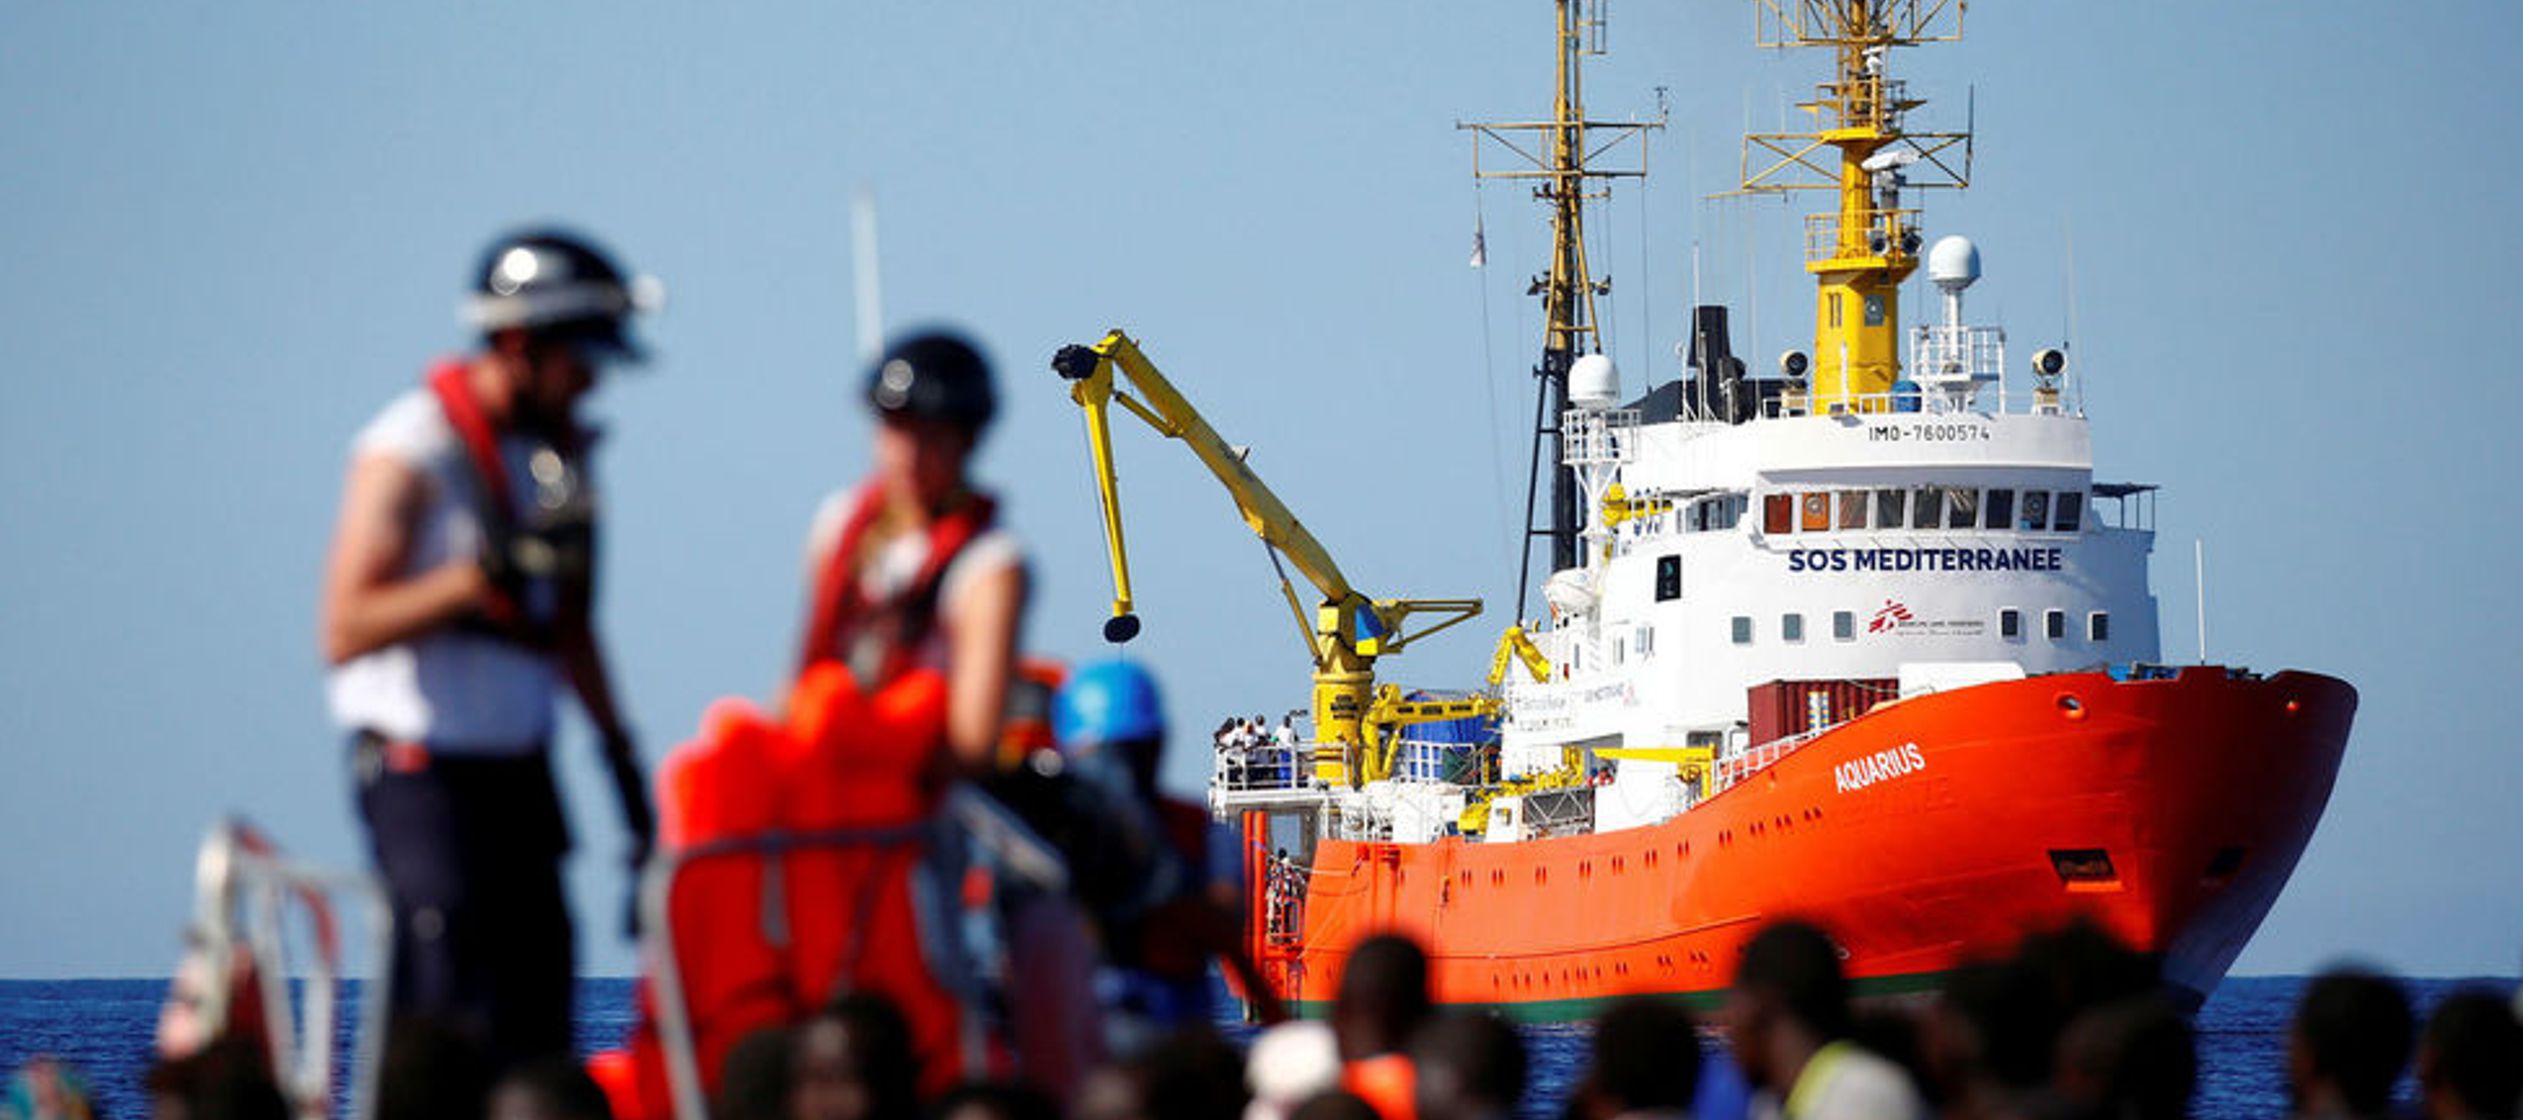 Entre estos inmigrantes rescatados en alta mar hay 123 menores no acompañados, 11 de ellos...